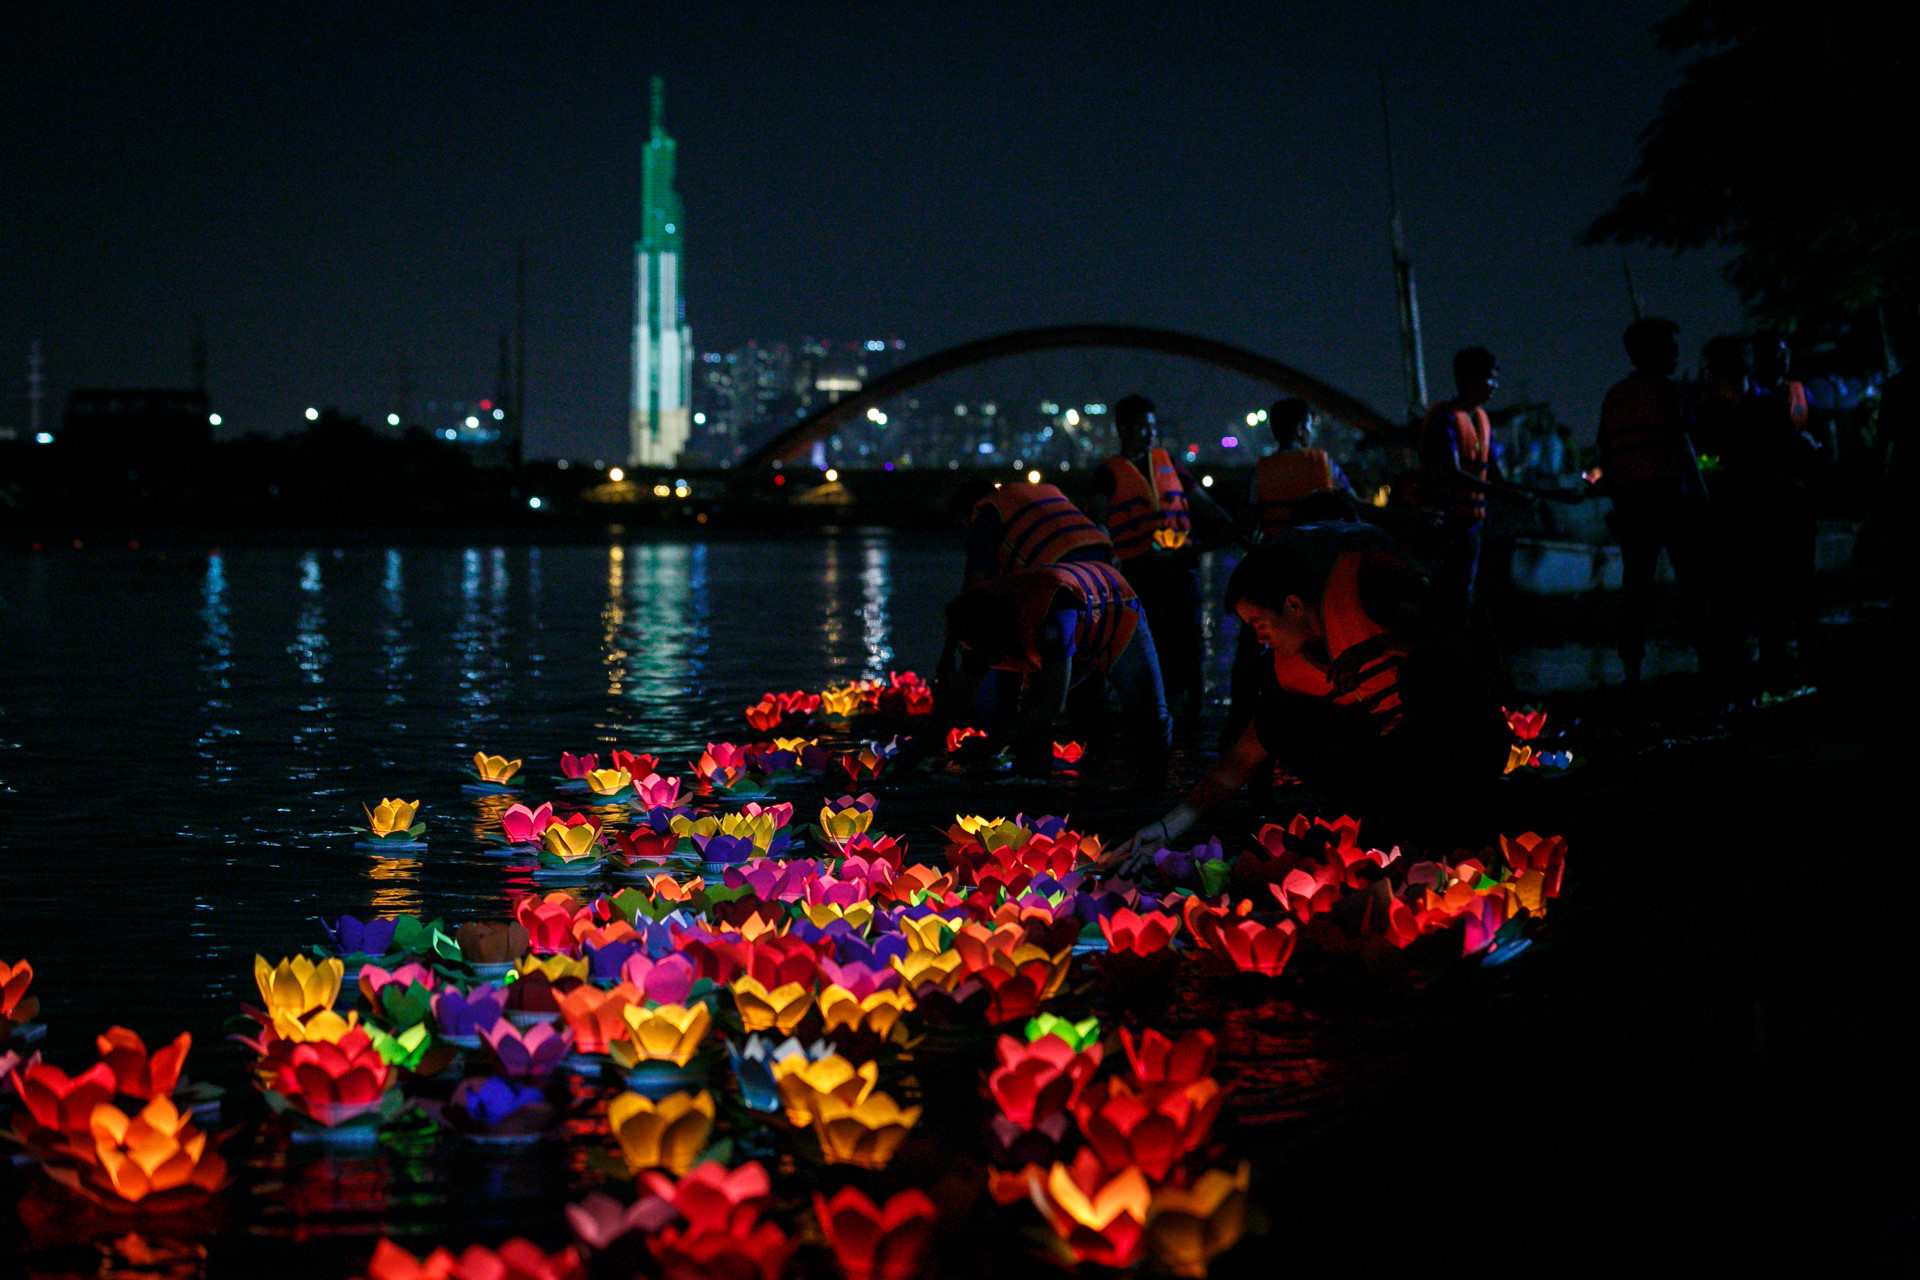 Hoa đăng rực sáng sông Sài Gòn đêm rằm tháng bảy